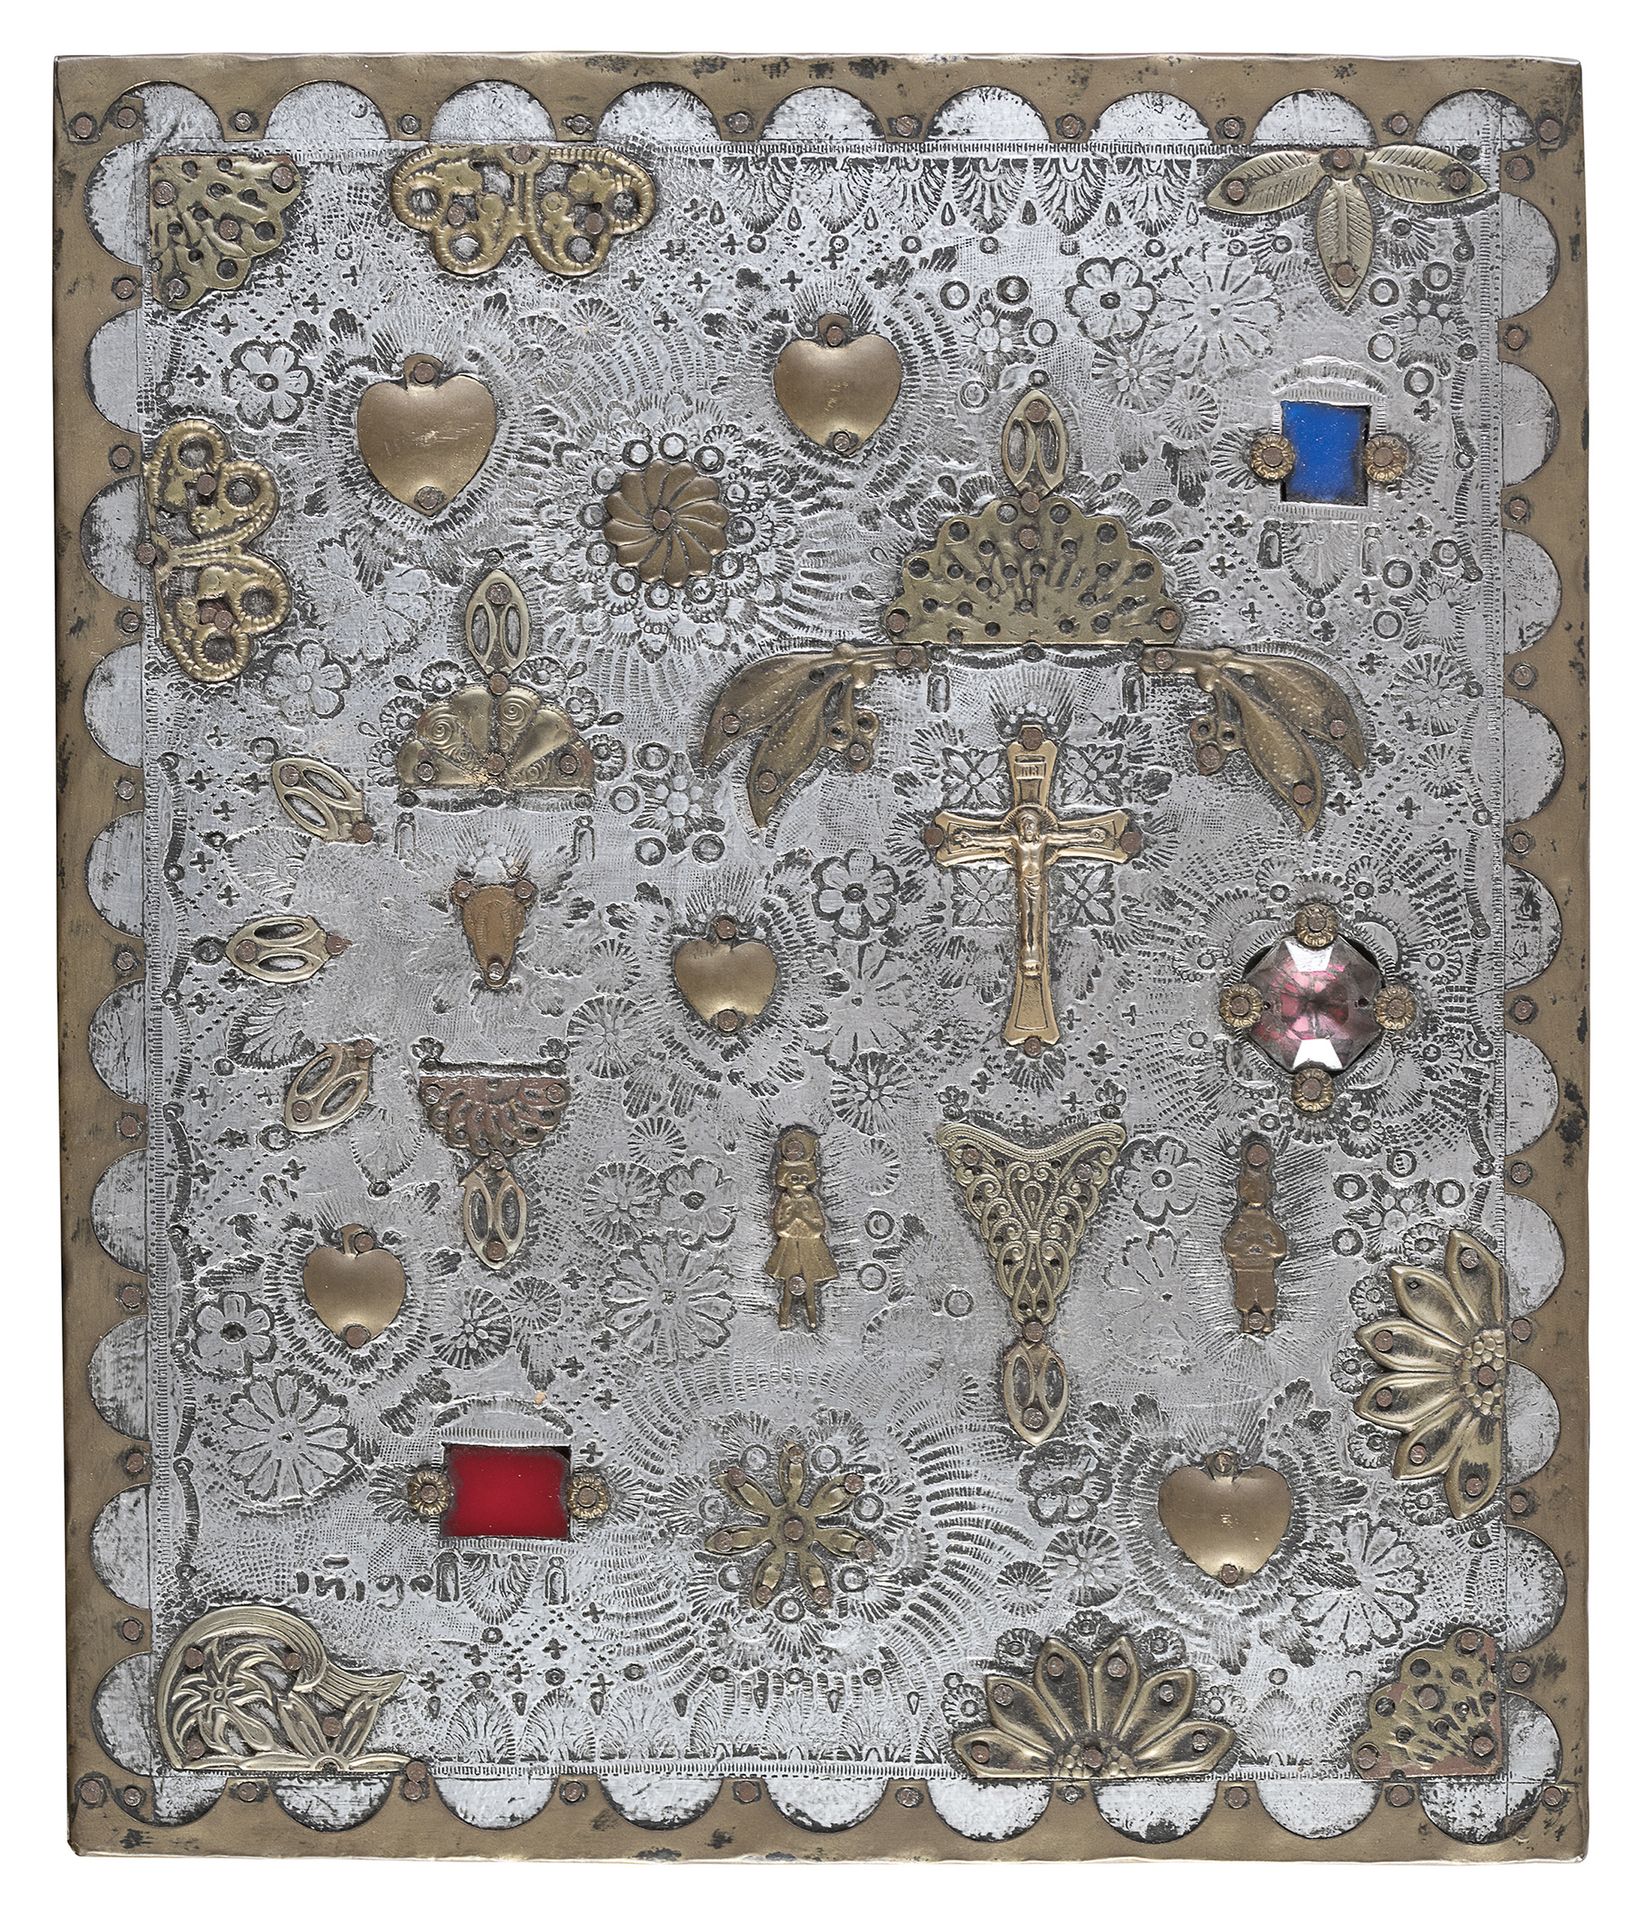 Null 金属图标，墨西哥，20世纪初

镀银的背景，镀金的金属和切割玻璃镶边的虔诚应用。木质支撑。

尺寸 cm. 27,5 x 23.